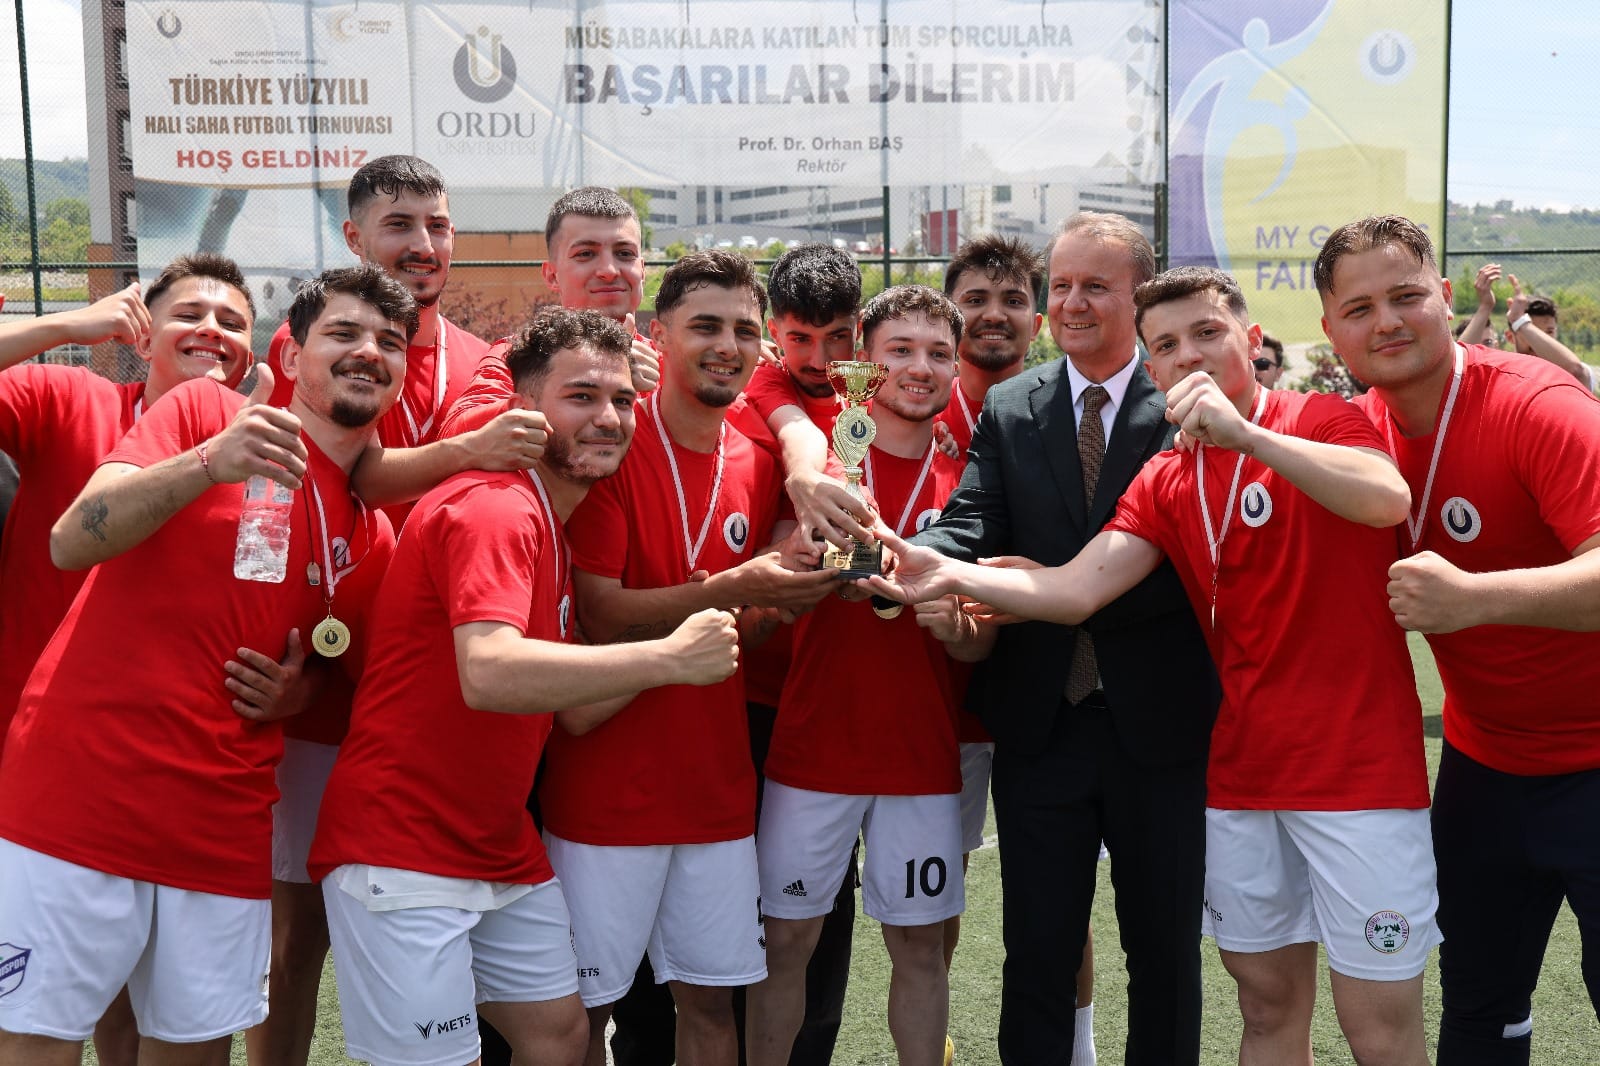  Ordu Üniversitesi Rektörlük Halı Saha Futbol Turnuvası Sona Erdi